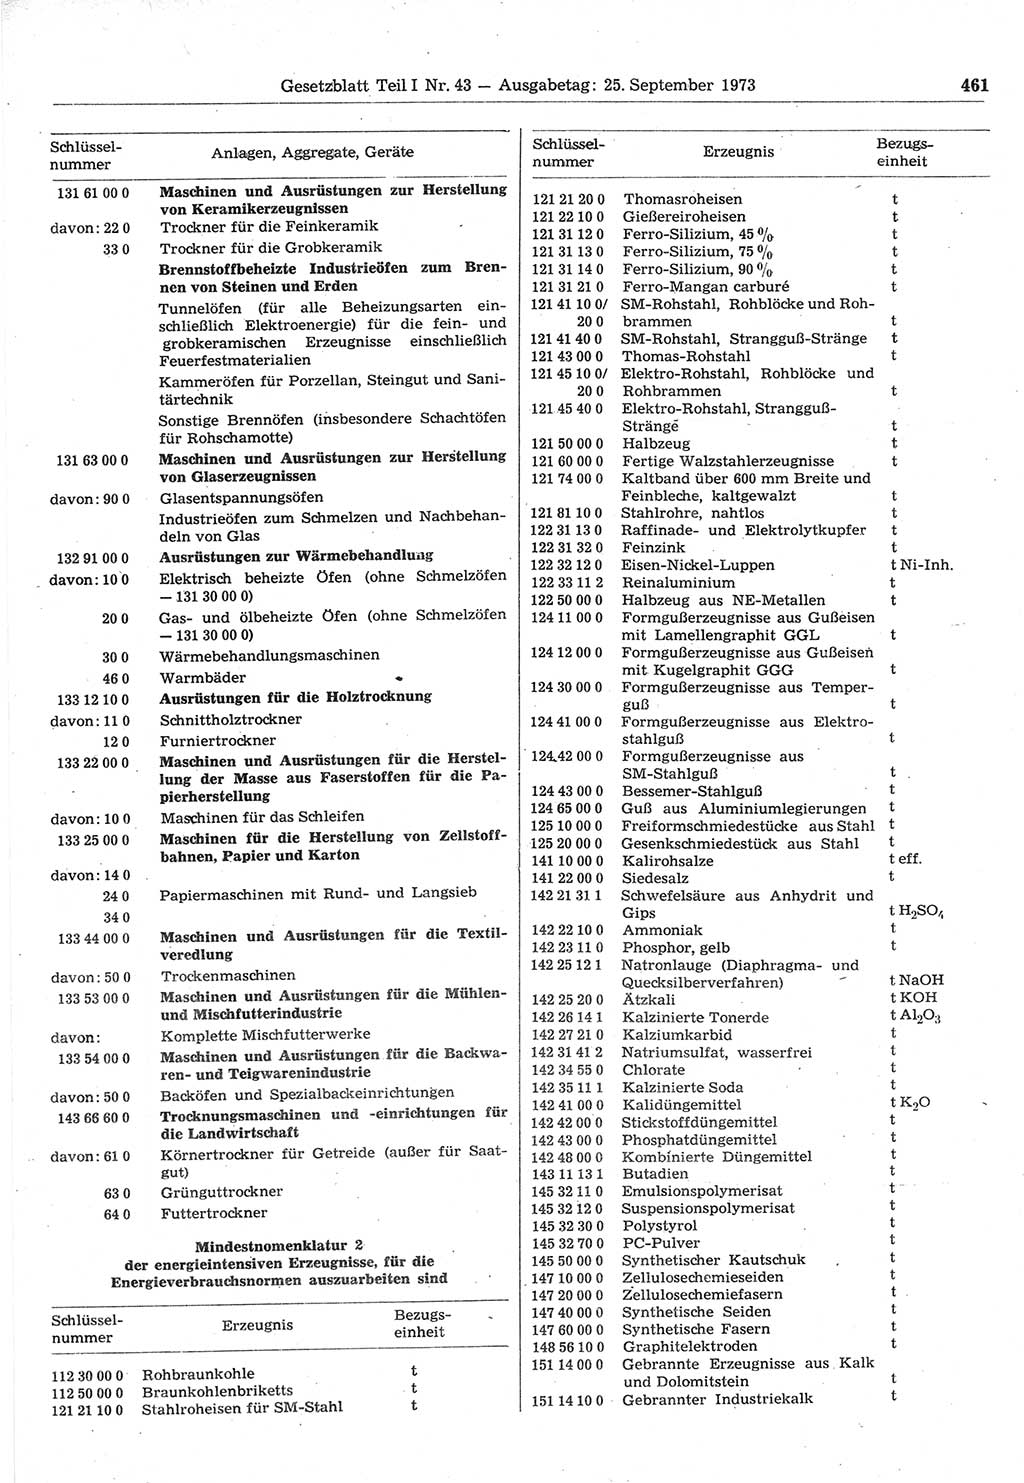 Gesetzblatt (GBl.) der Deutschen Demokratischen Republik (DDR) Teil Ⅰ 1973, Seite 461 (GBl. DDR Ⅰ 1973, S. 461)